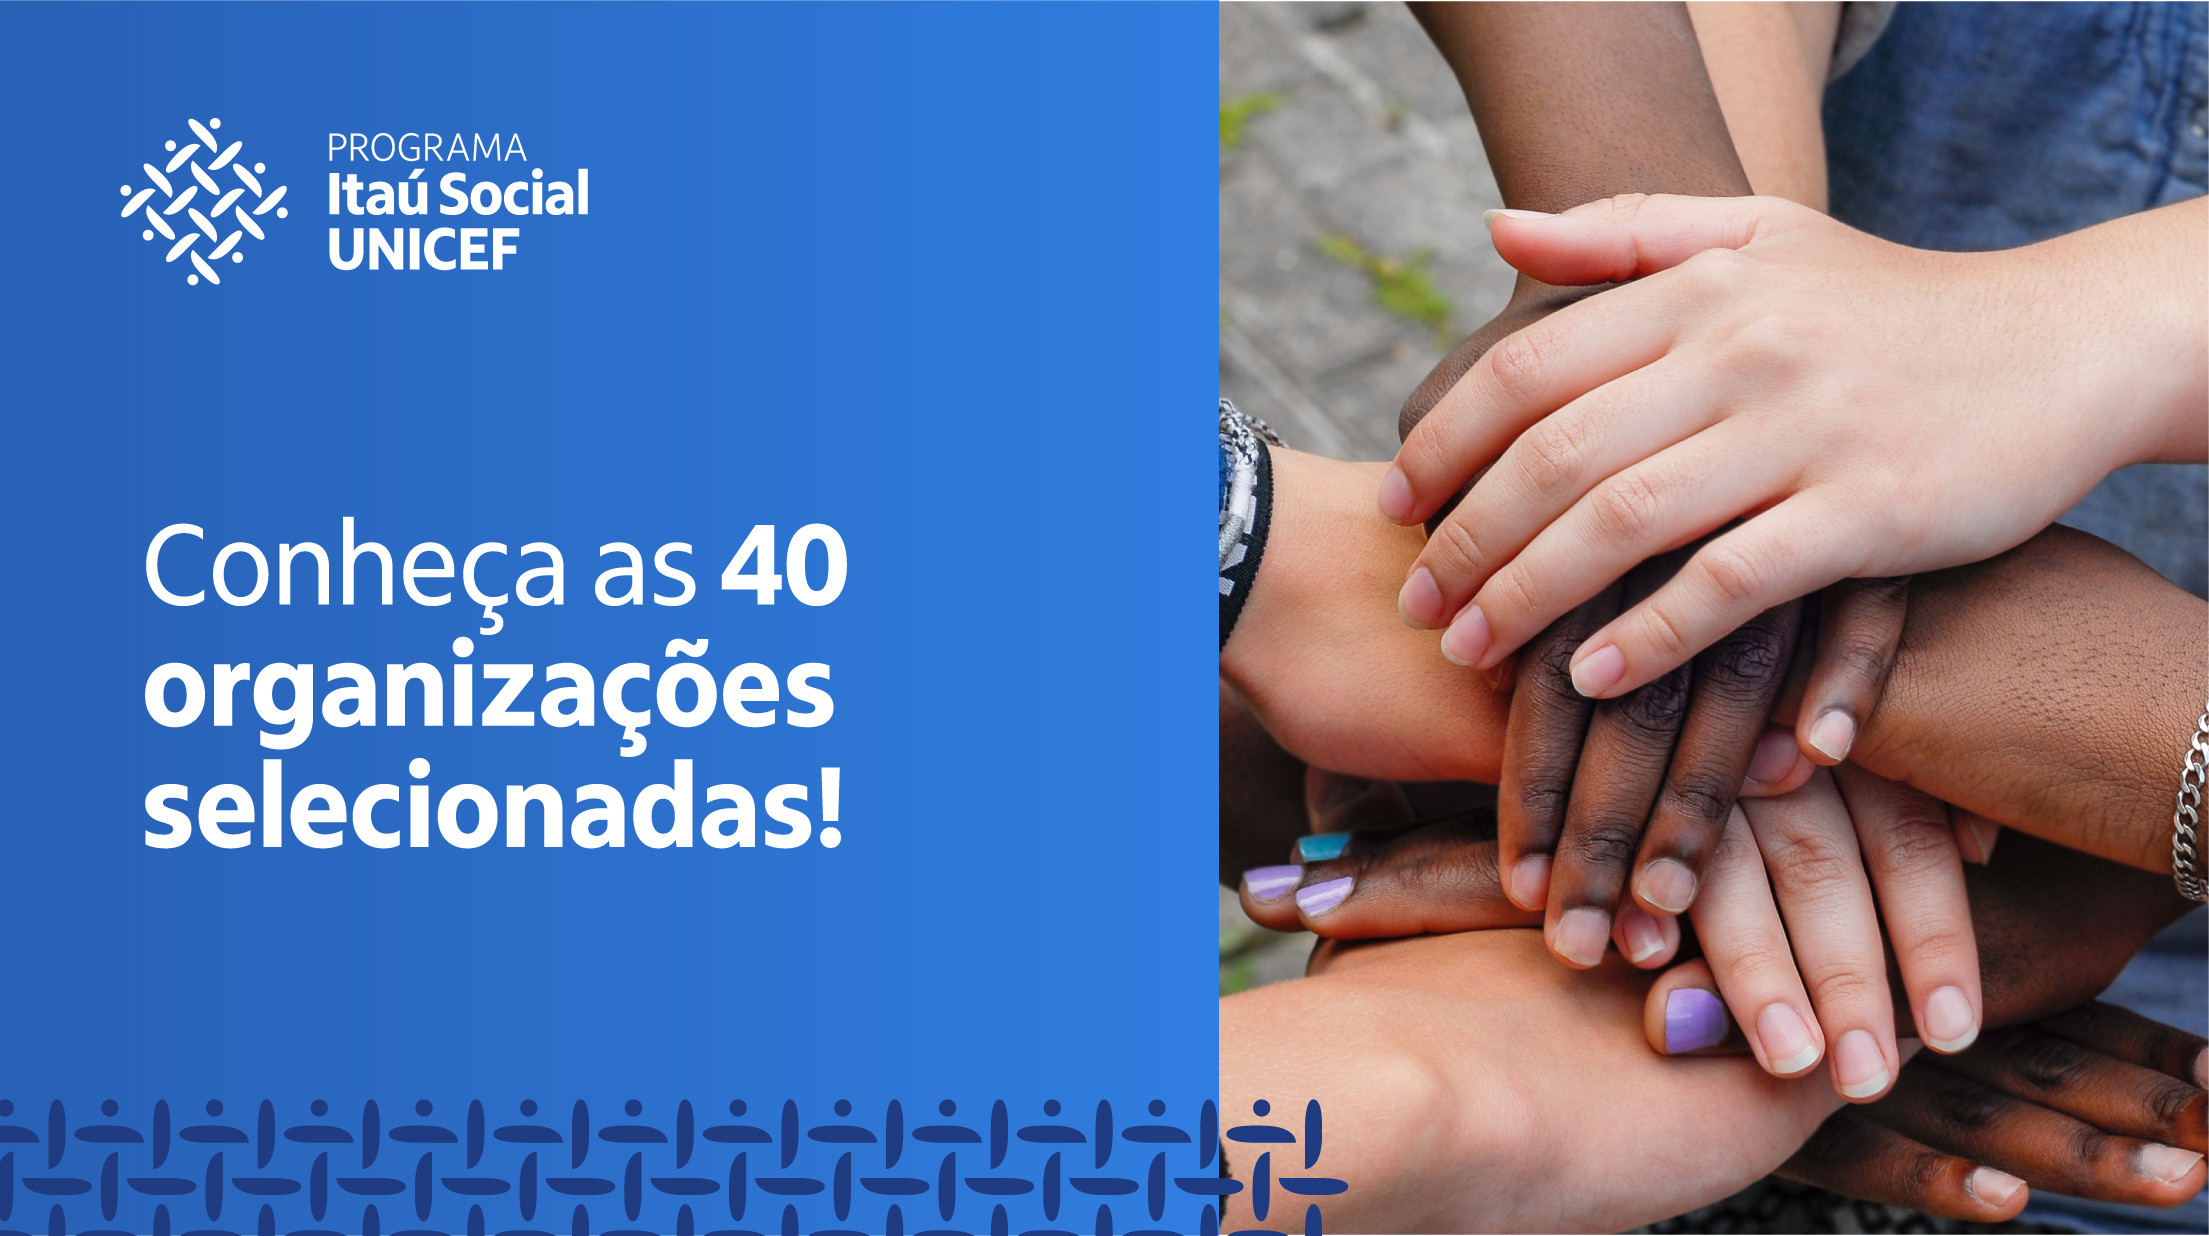 Programa Itaú Social UNICEF divulga as 40 organizações sociais que vão receber fomento para planos de educação integral